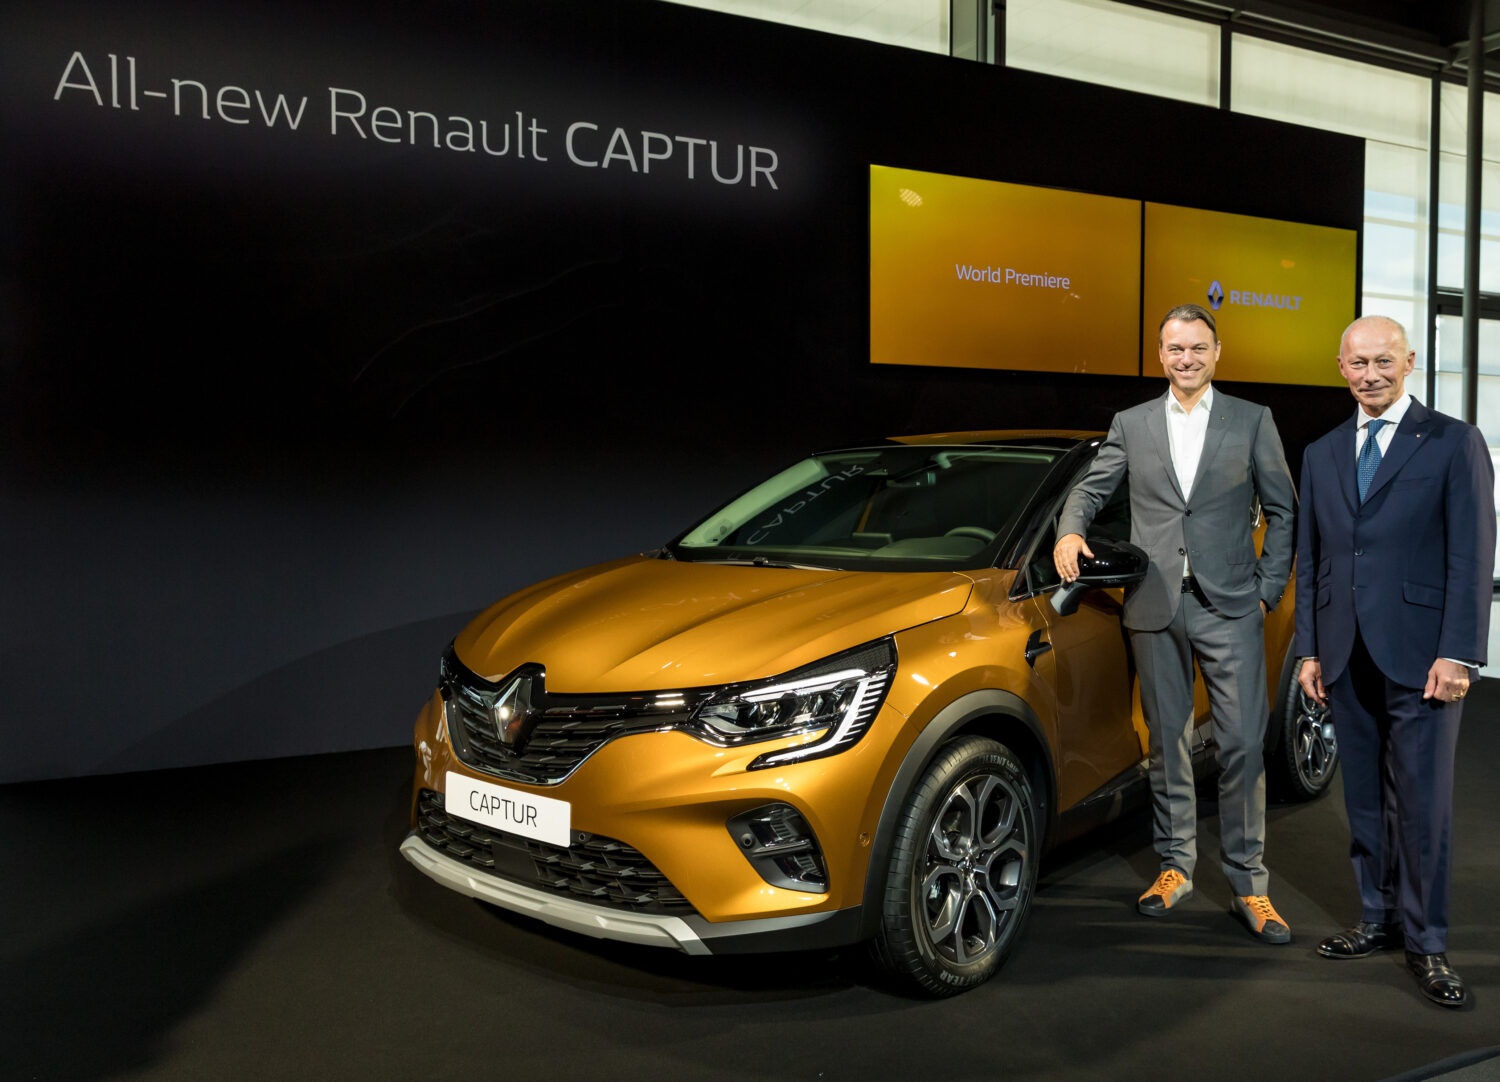 2019 - Nouveau Renault CAPTUR présenté Au Salon De Francfort